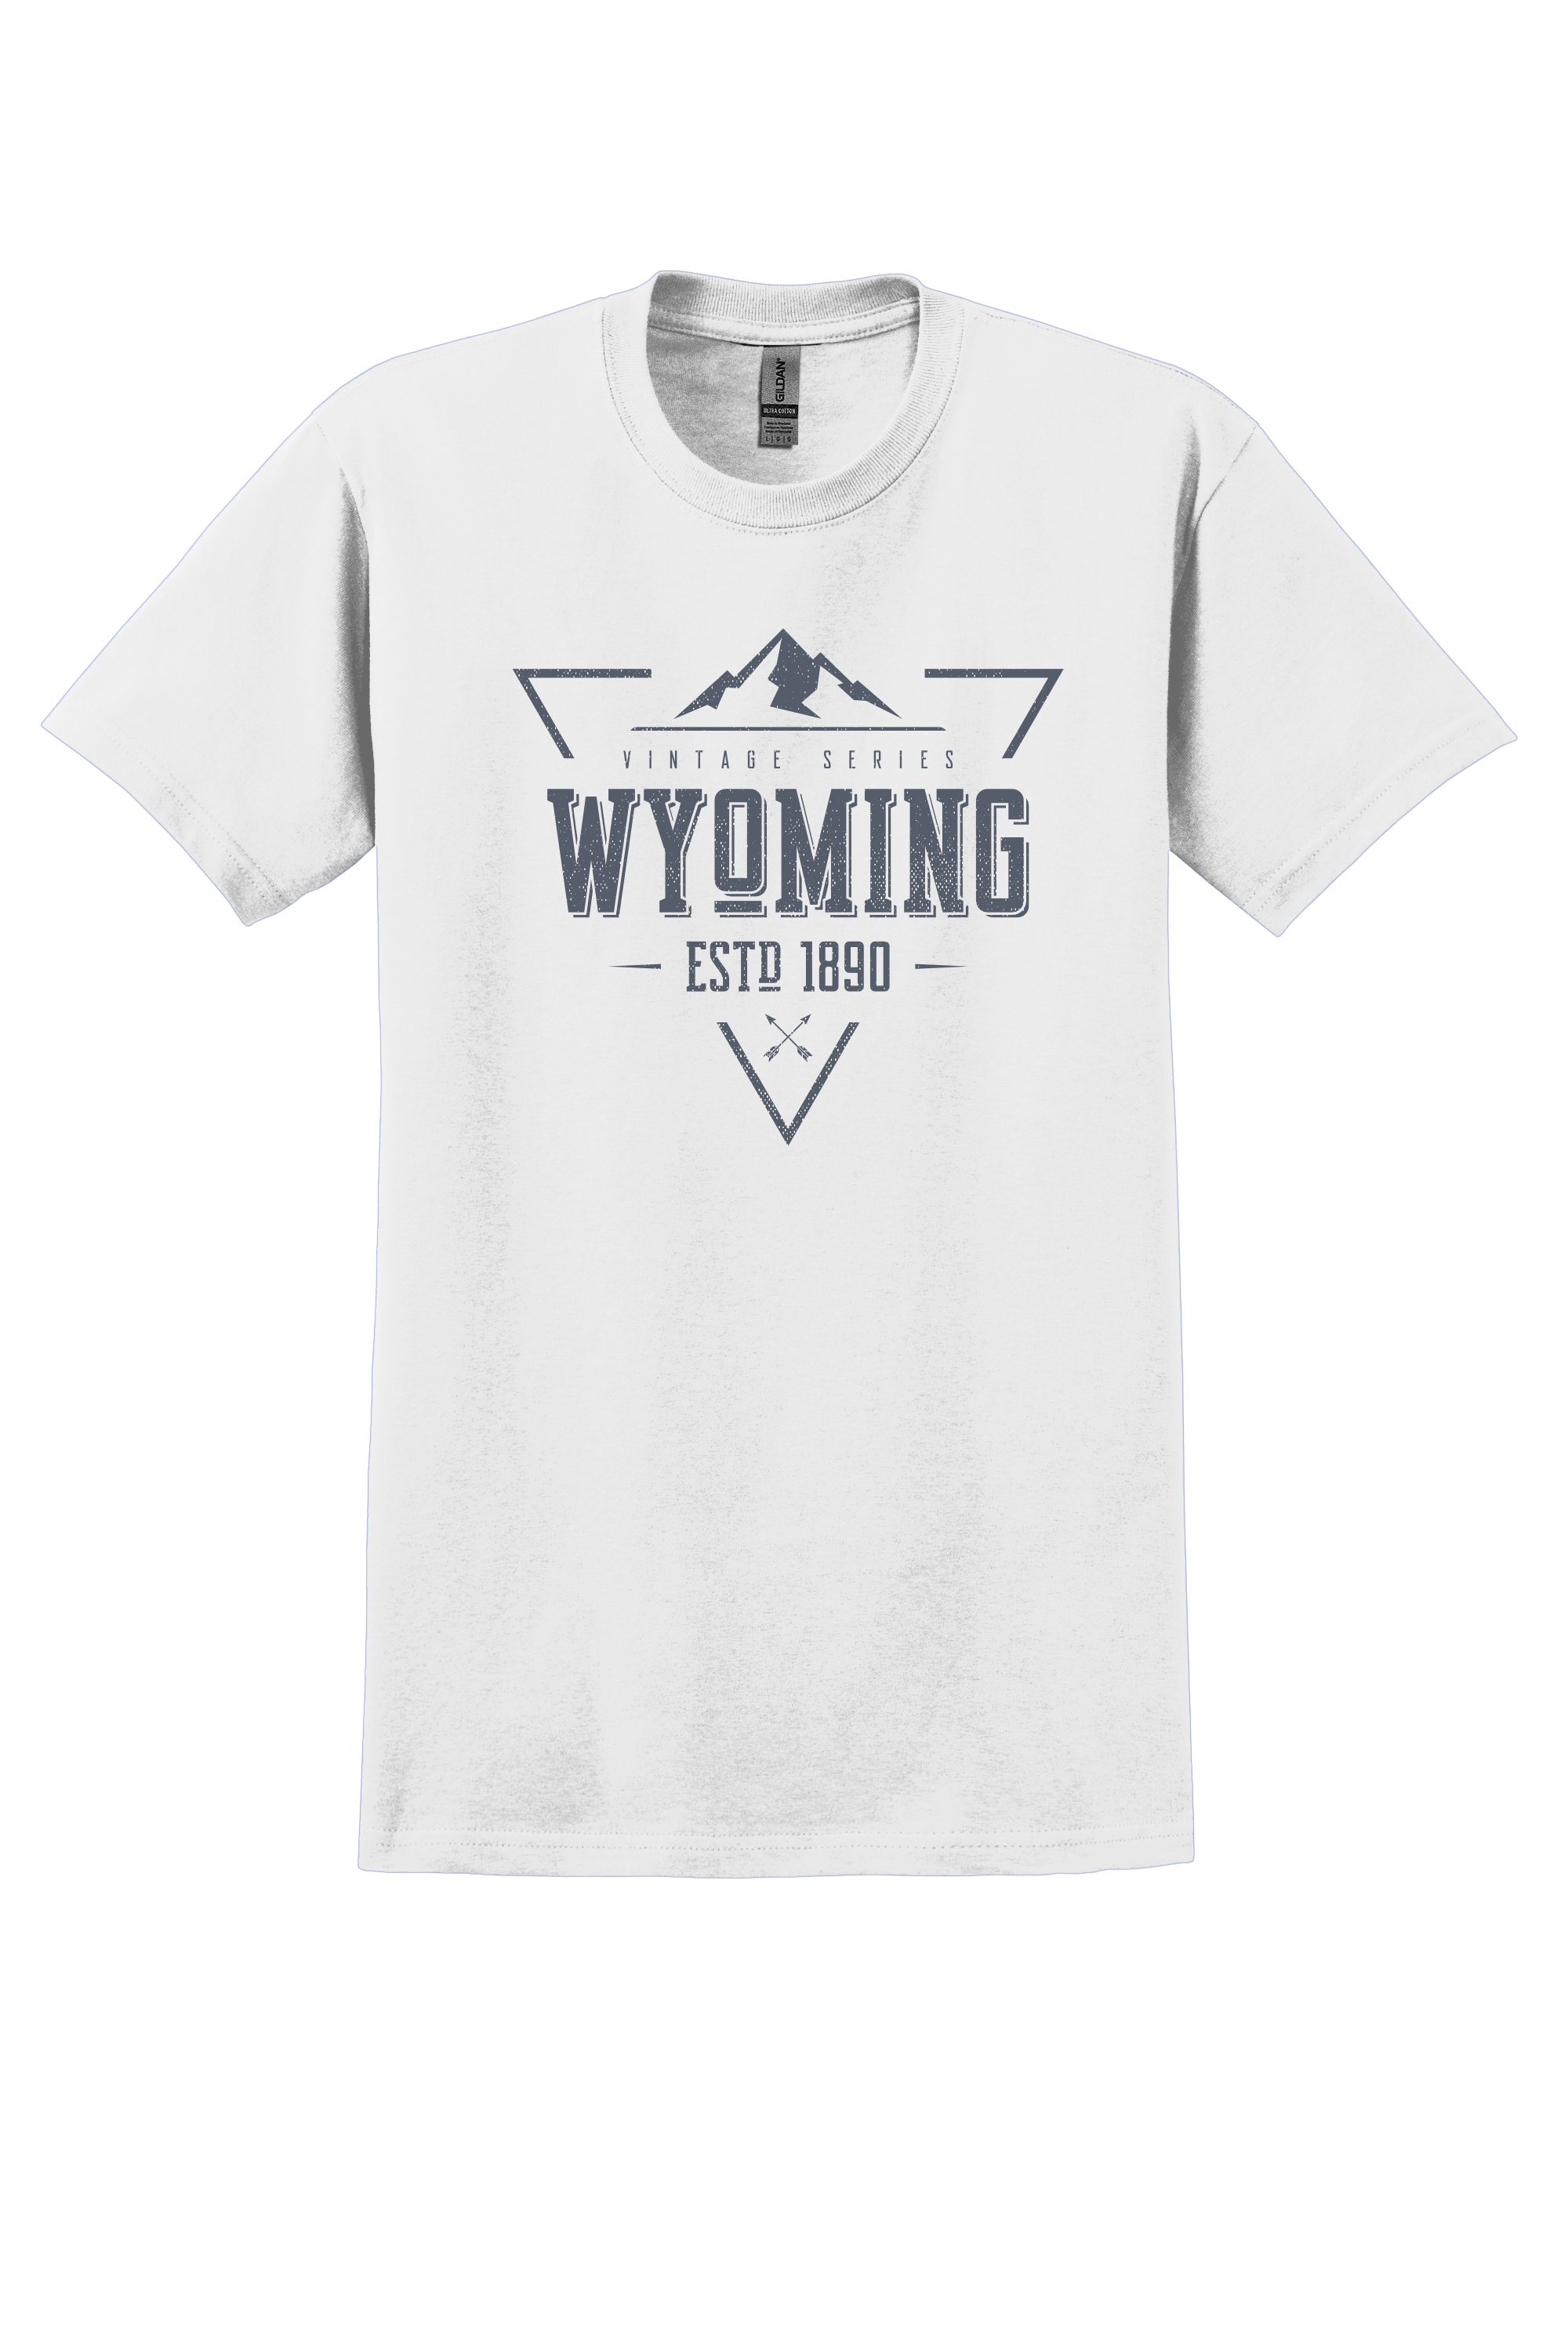 Wyoming Vintage Series 1890 Shirt